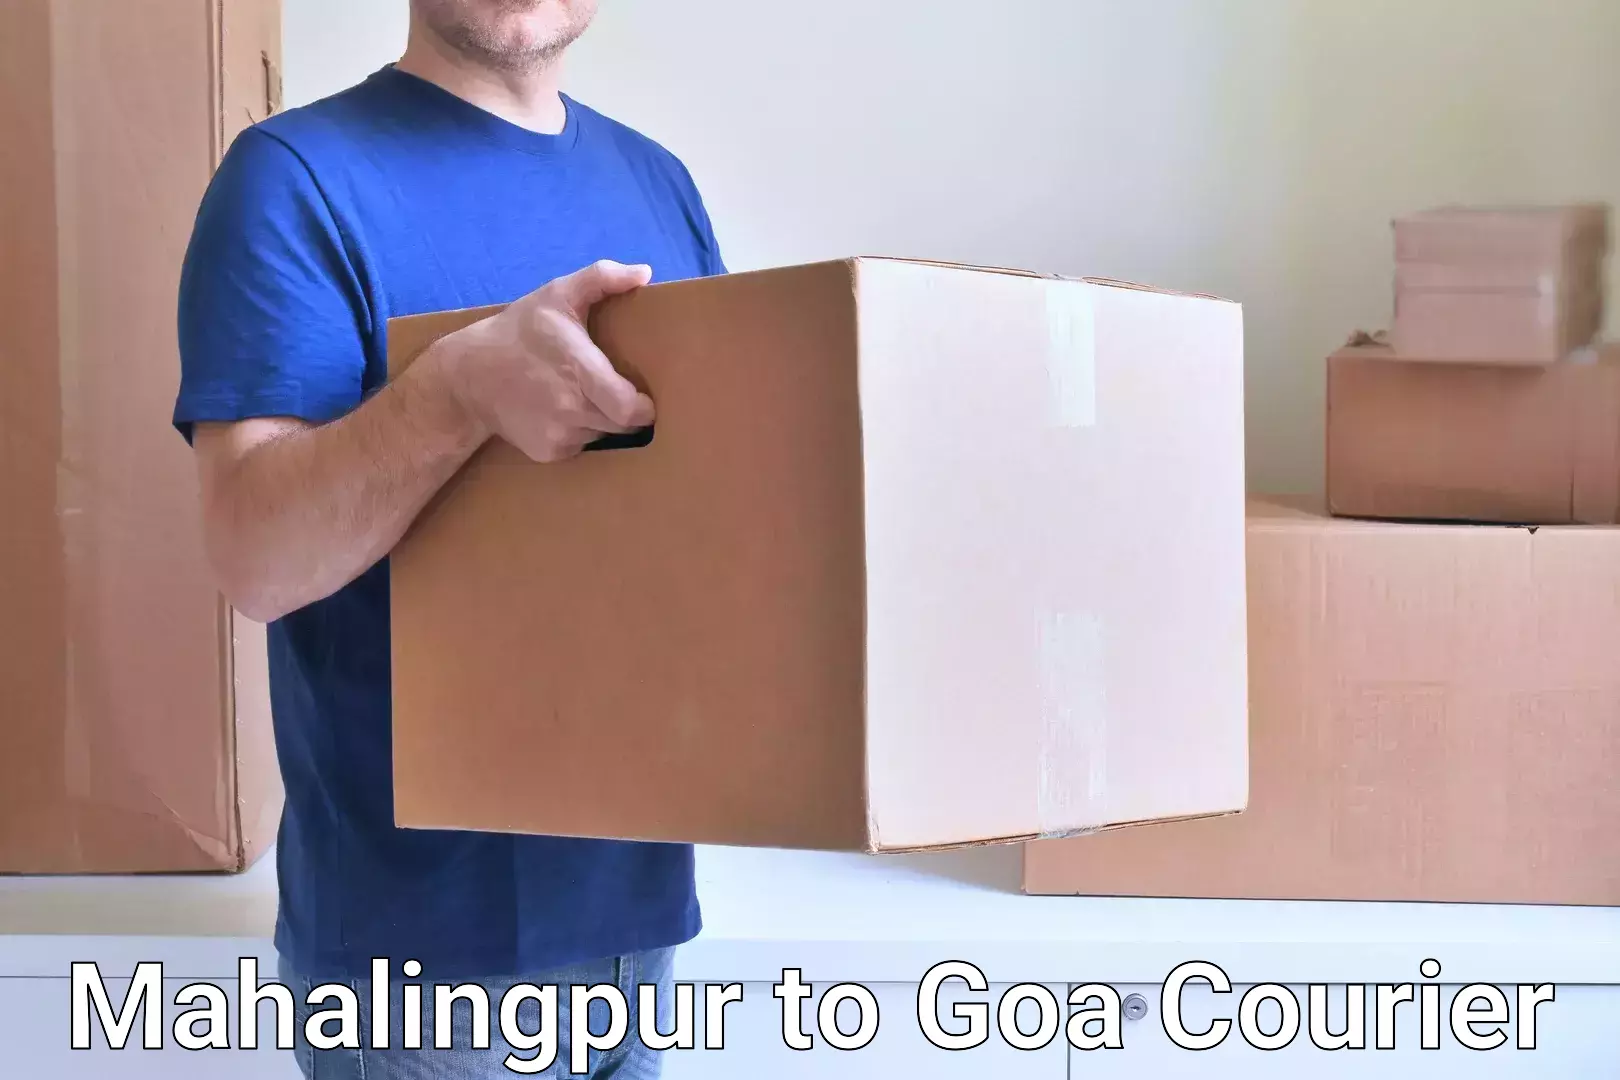 Efficient parcel service Mahalingpur to Bardez